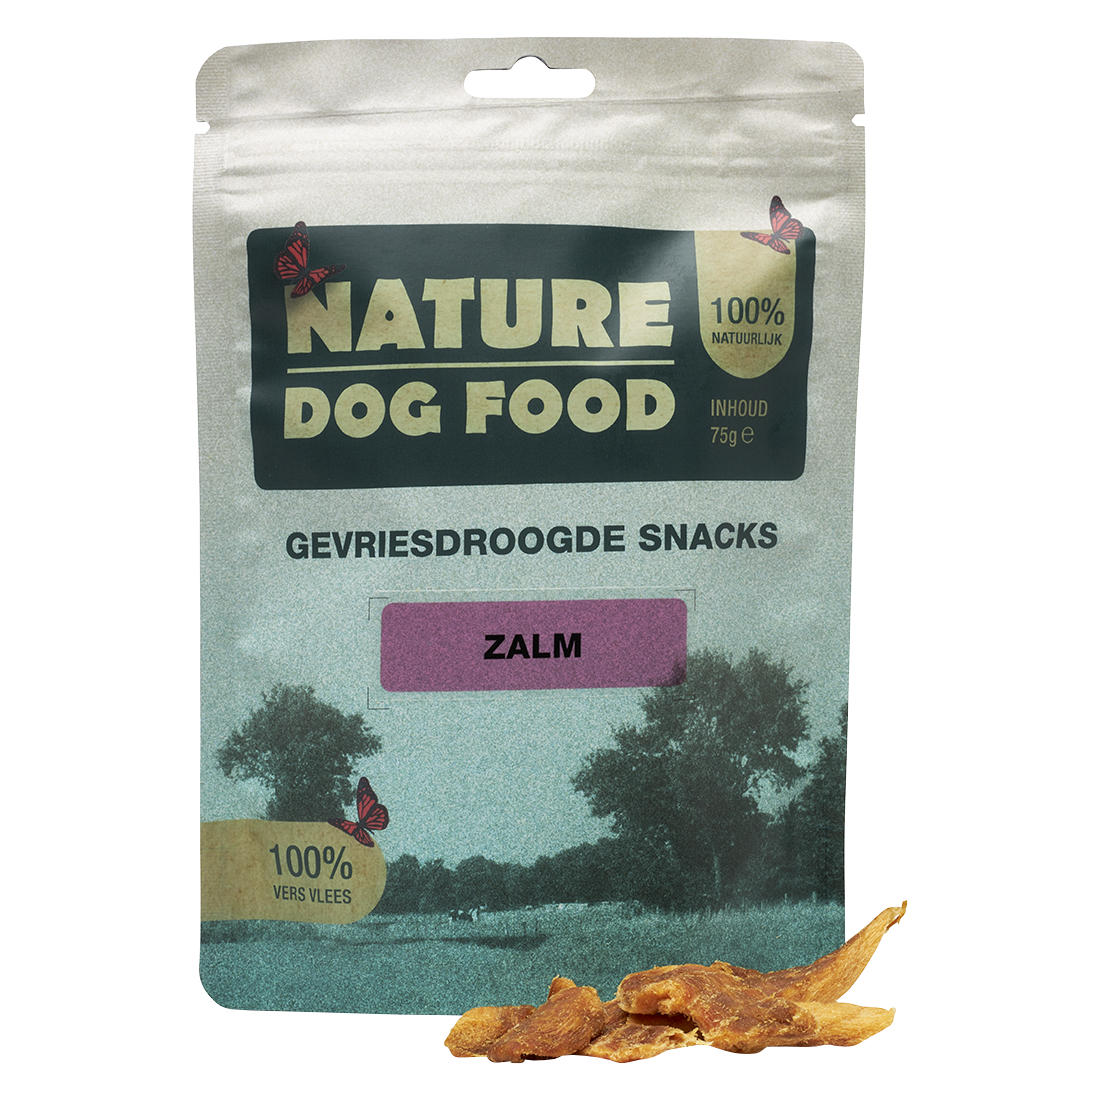 Gevriesdroogde snacks voor honden van Zalm